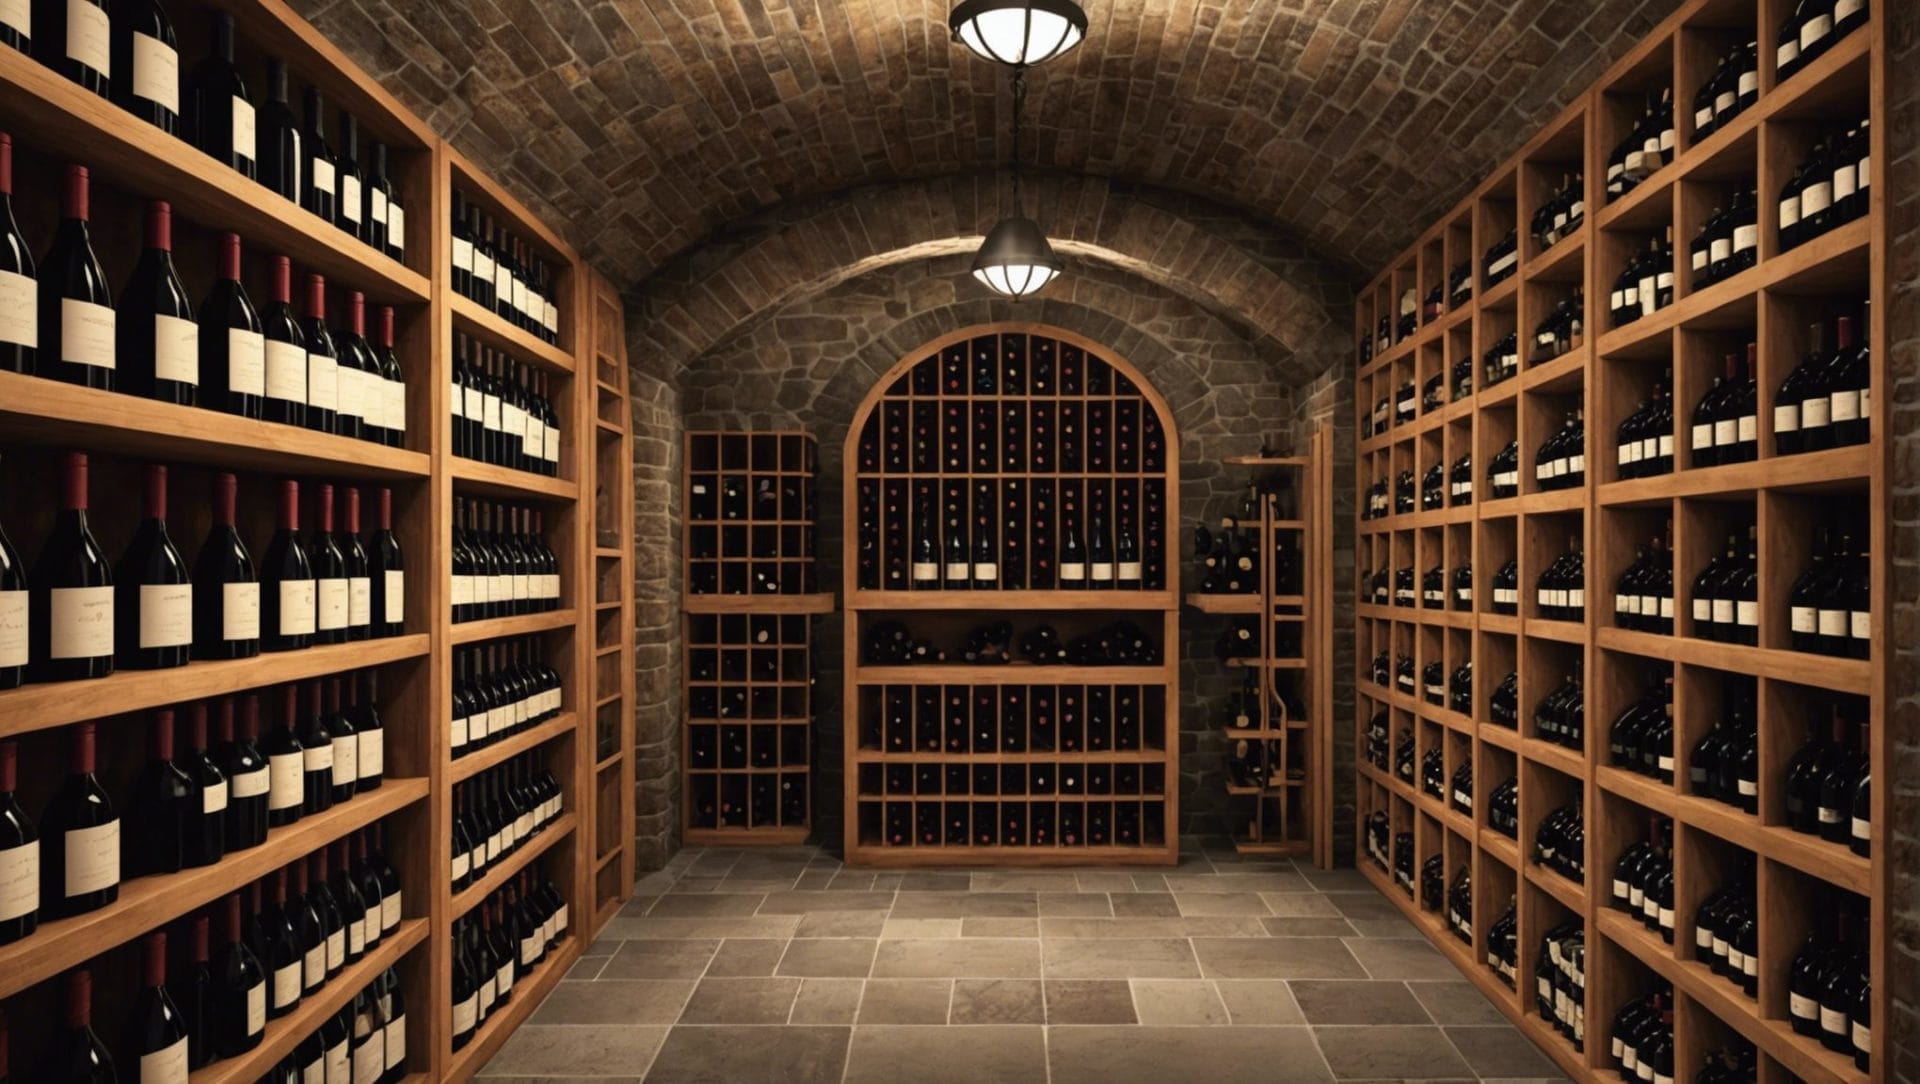 découvrez comment ouvrir une cave à vin en tant que commerce : réglementation, gestion des stocks, choix des vins et conseils pour réussir dans ce secteur passionnant.